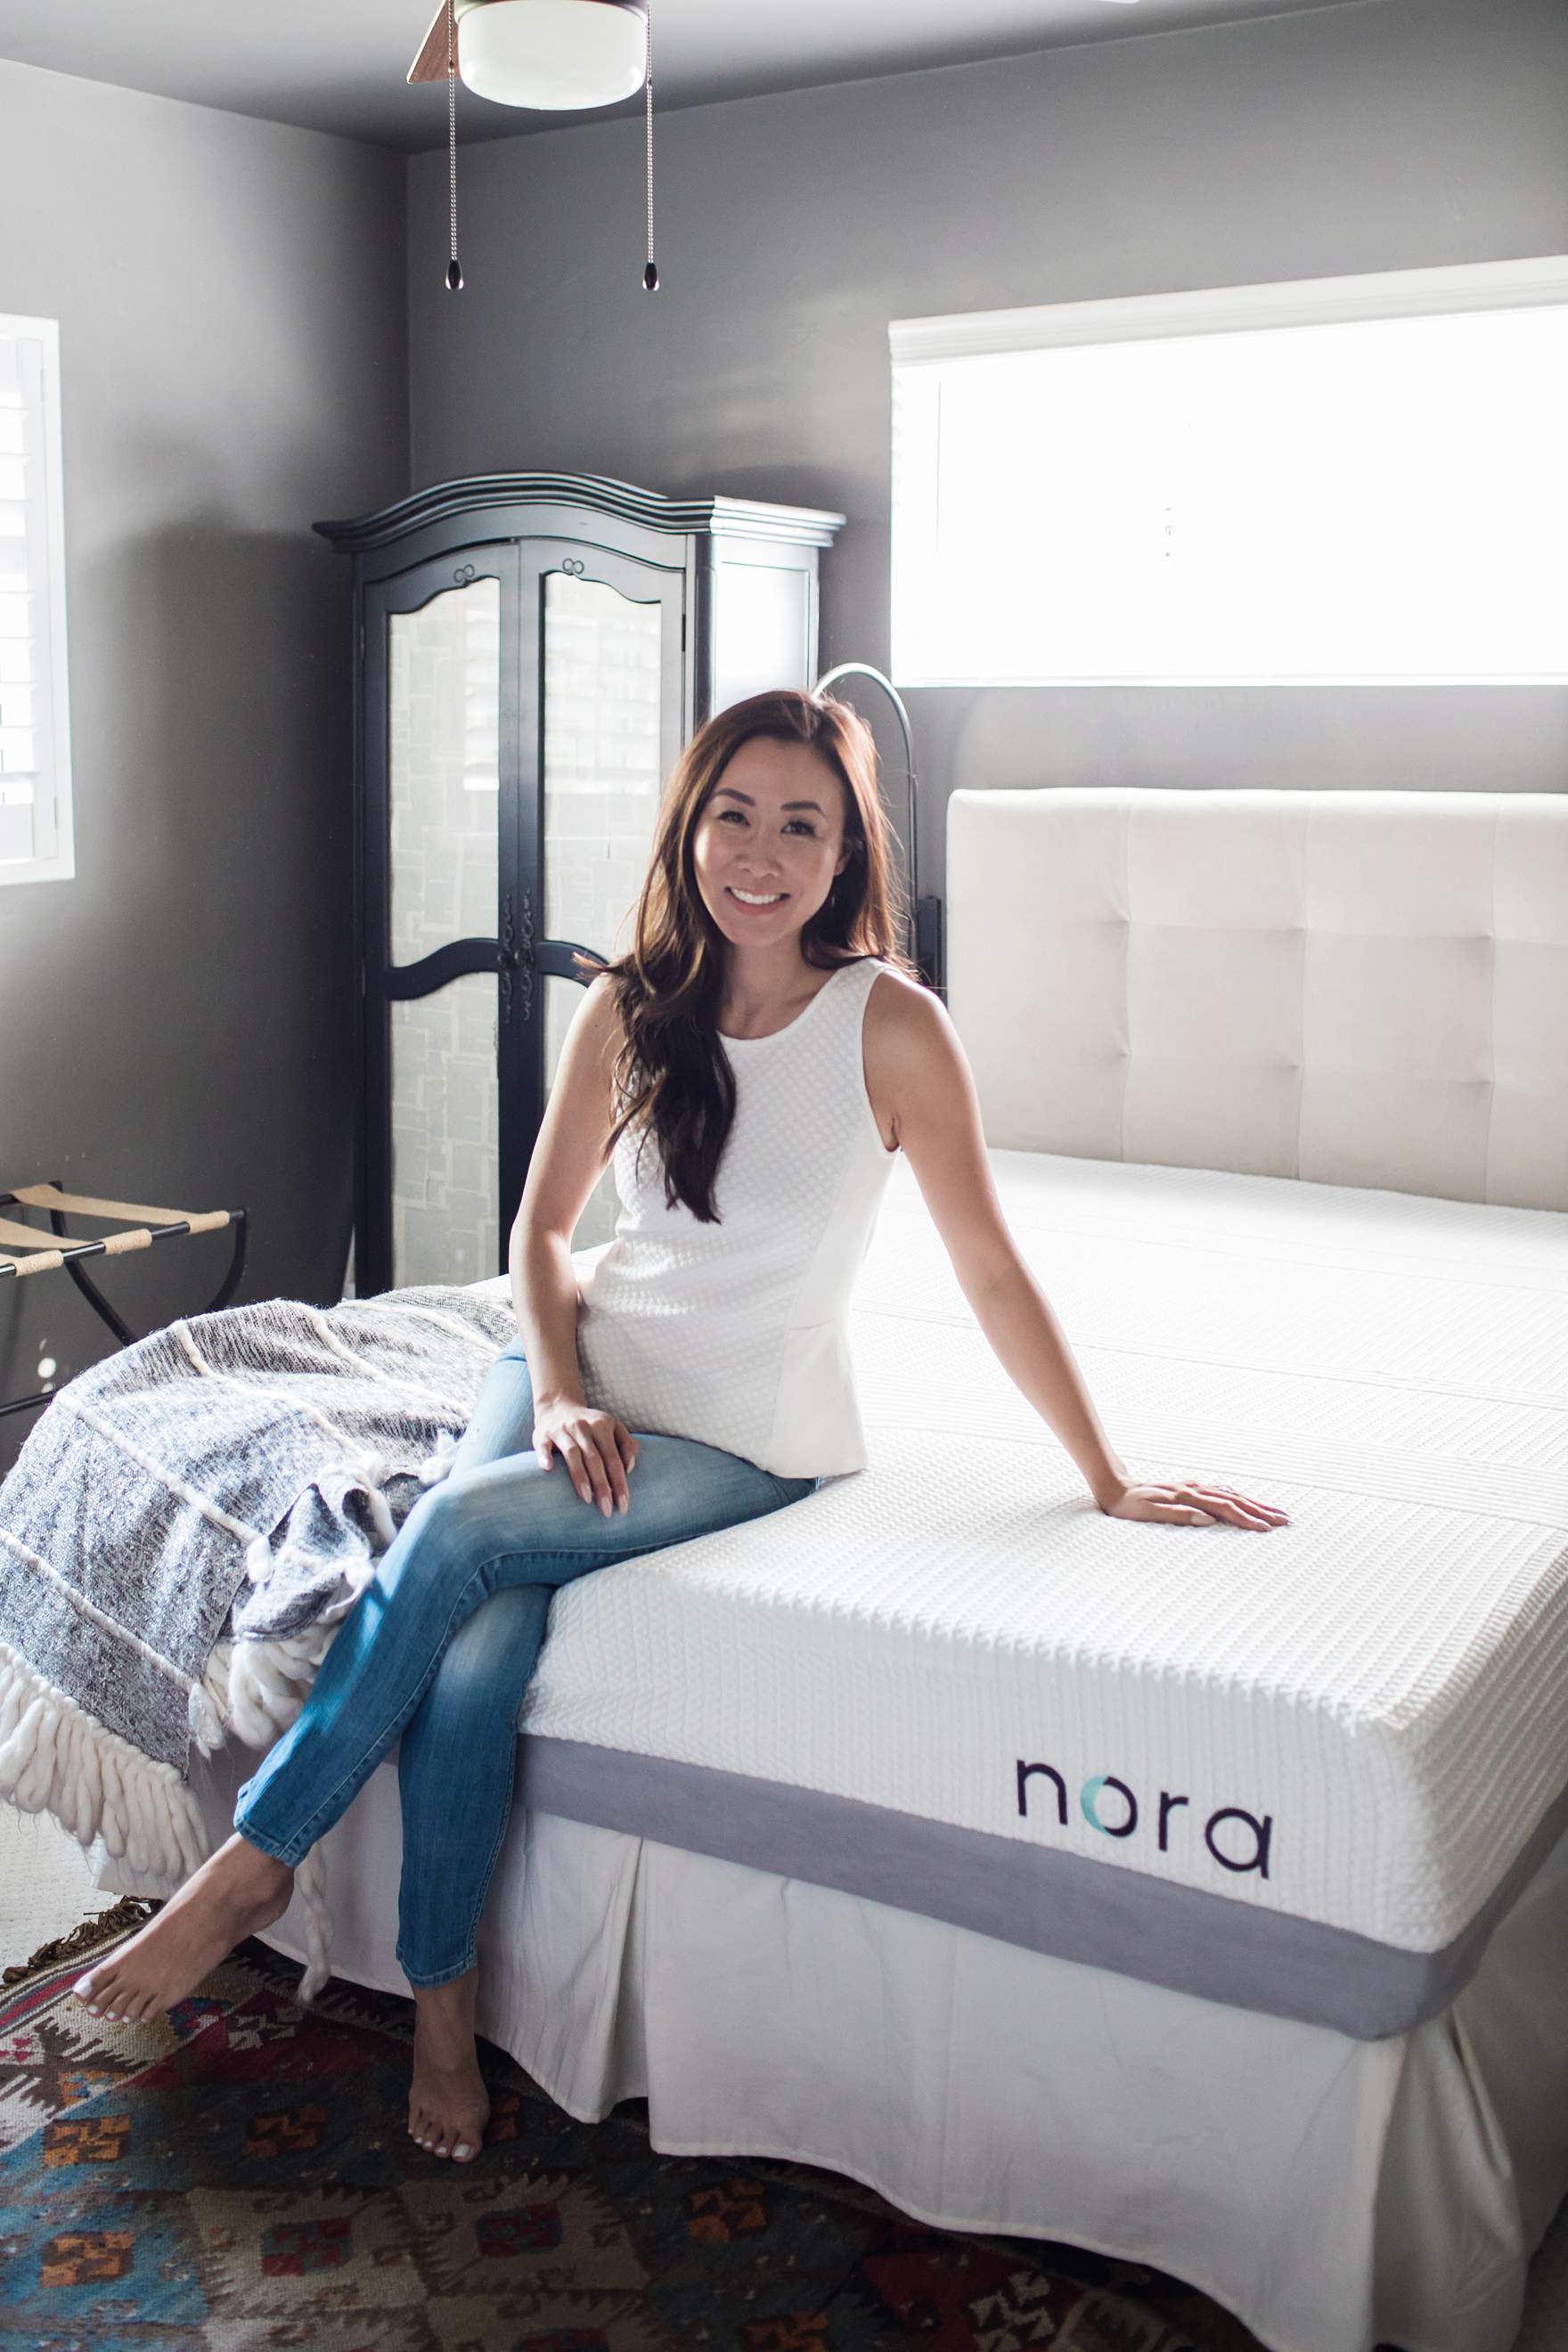 Wayfair's new mattress in a box - Nora